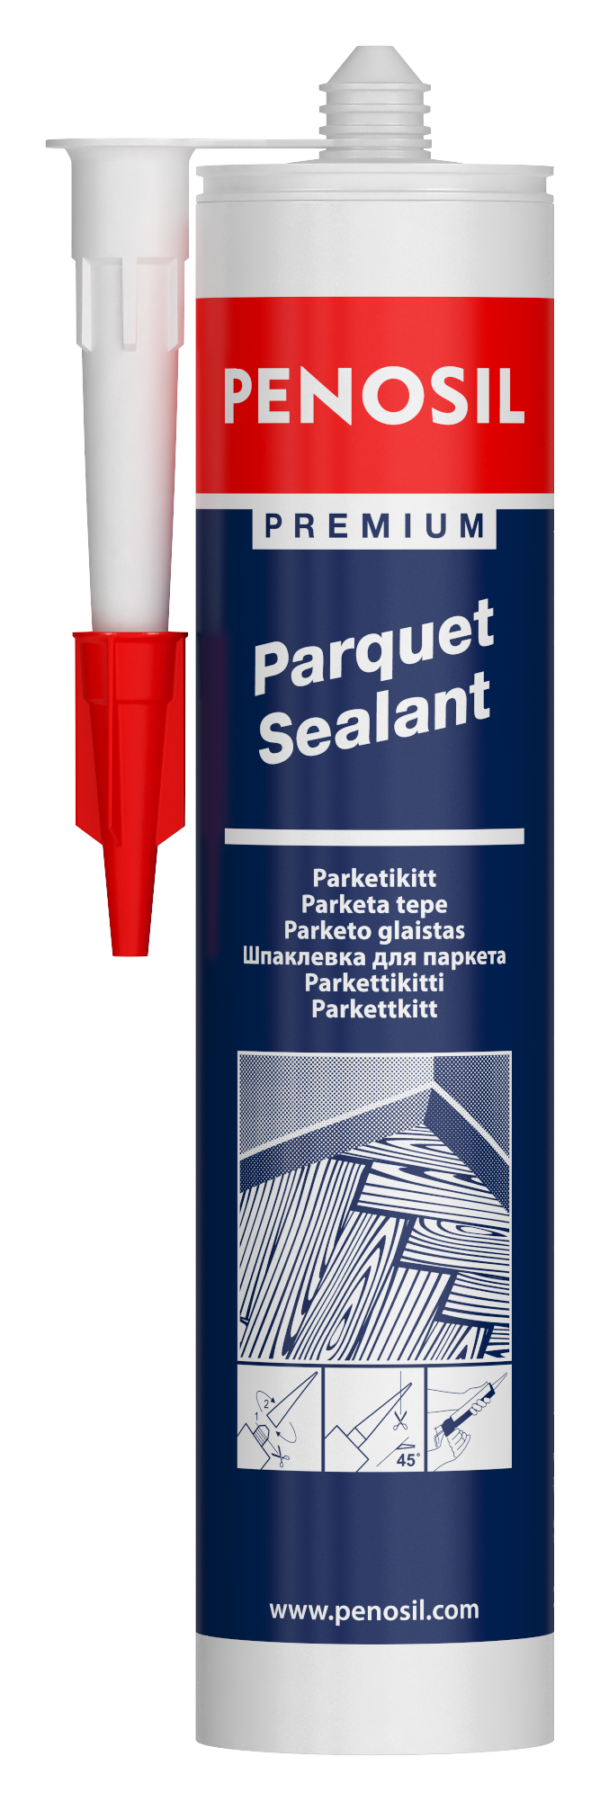 PENOSIL Premium Parquet Sealant parketti- ja laminaattilattioihin